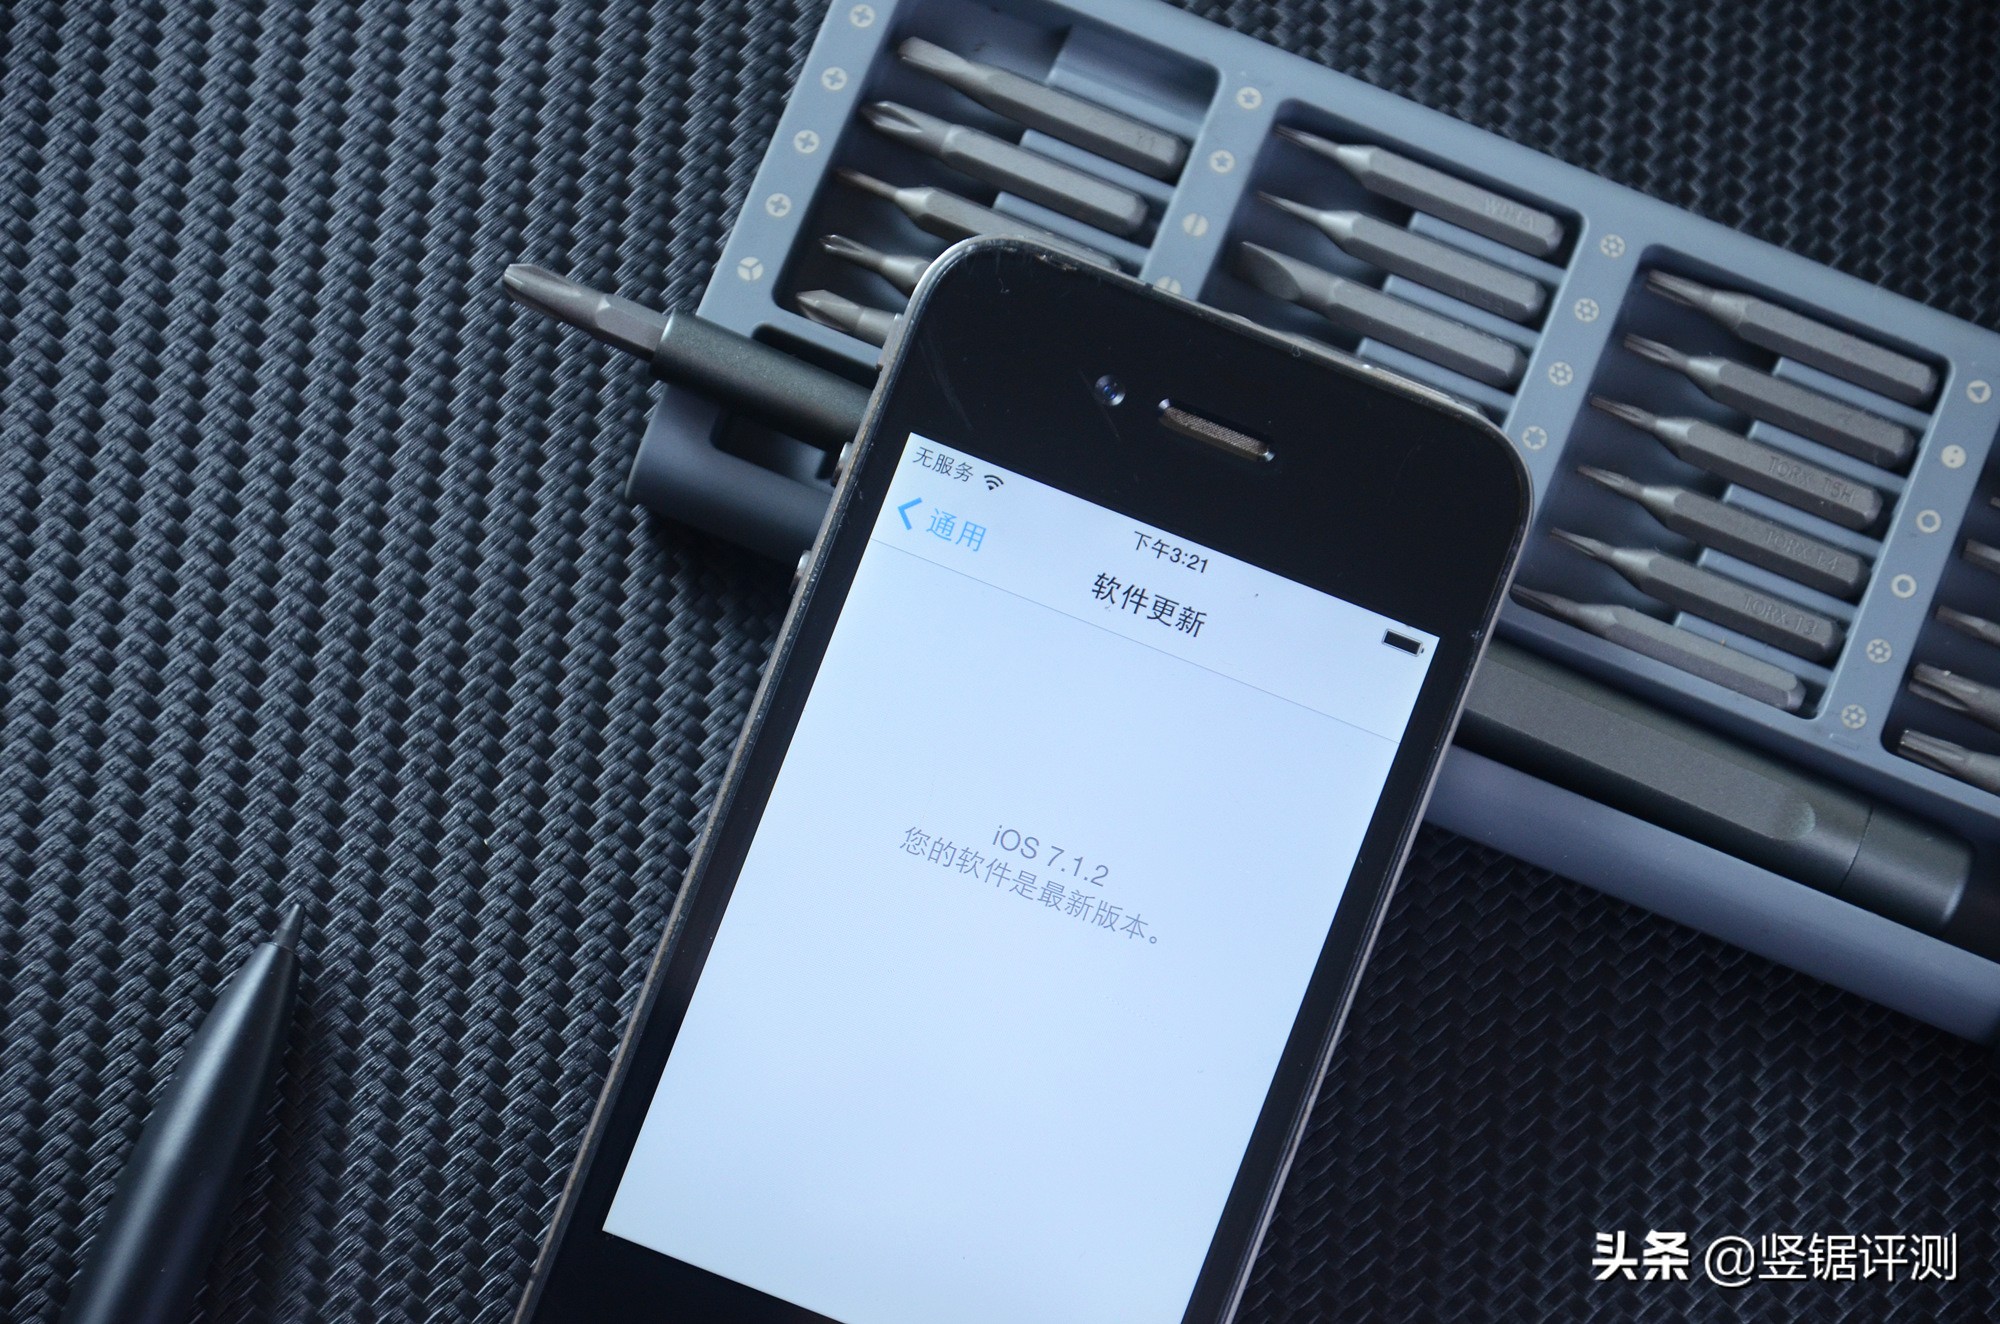 重温经典的iPhone 4手机，现在还能下载应用么？